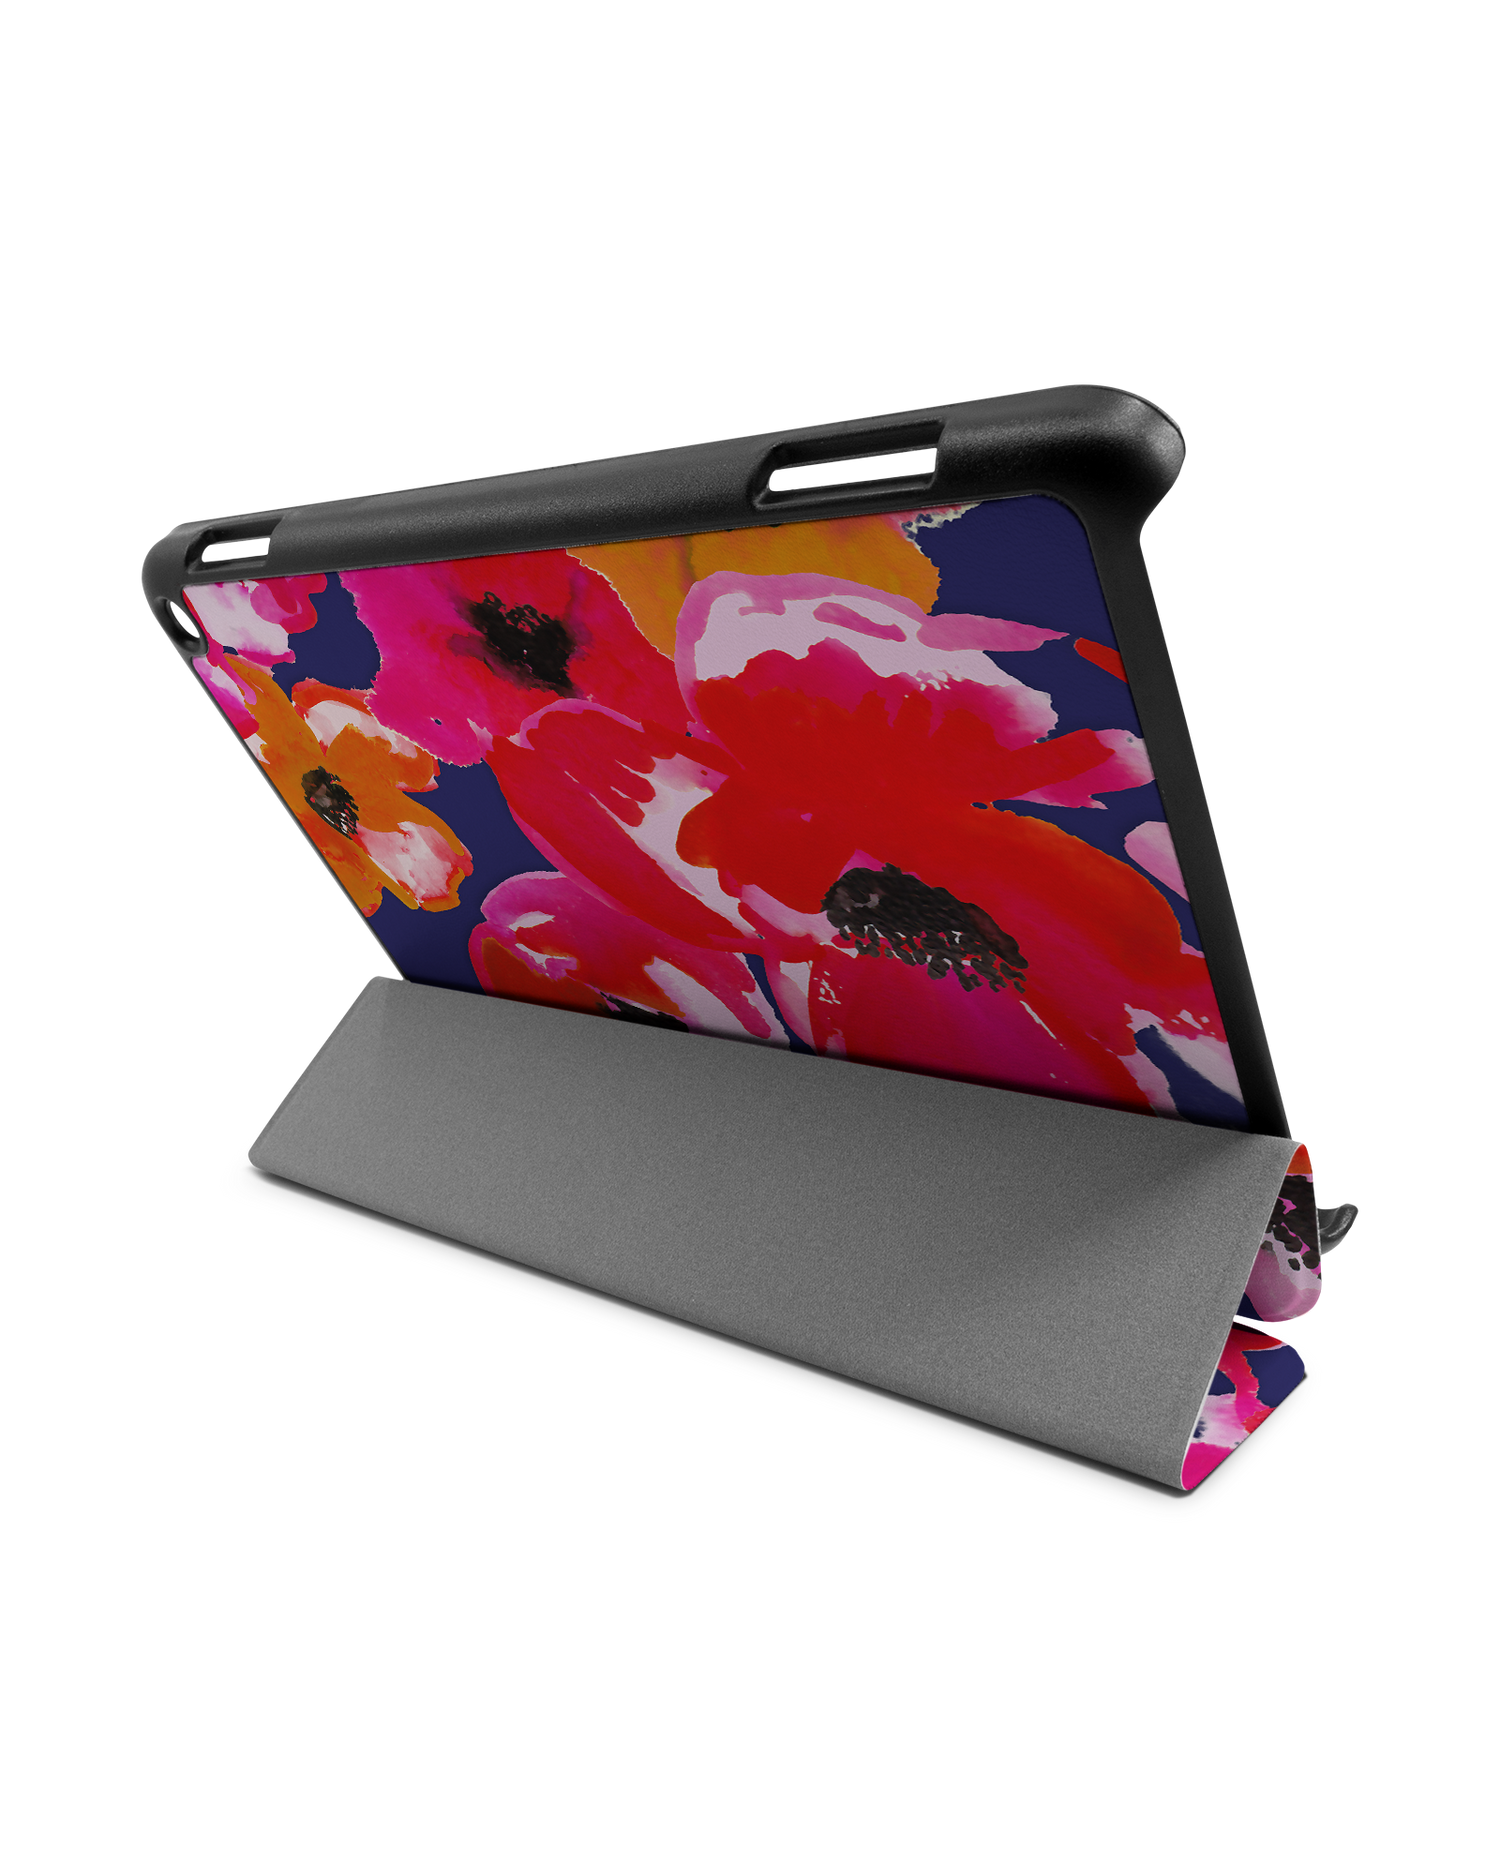 Painted Poppies Tablet Smart Case für Amazon Fire HD 8 (2022), Amazon Fire HD 8 Plus (2022), Amazon Fire HD 8 (2020), Amazon Fire HD 8 Plus (2020): Aufgestellt im Querformat